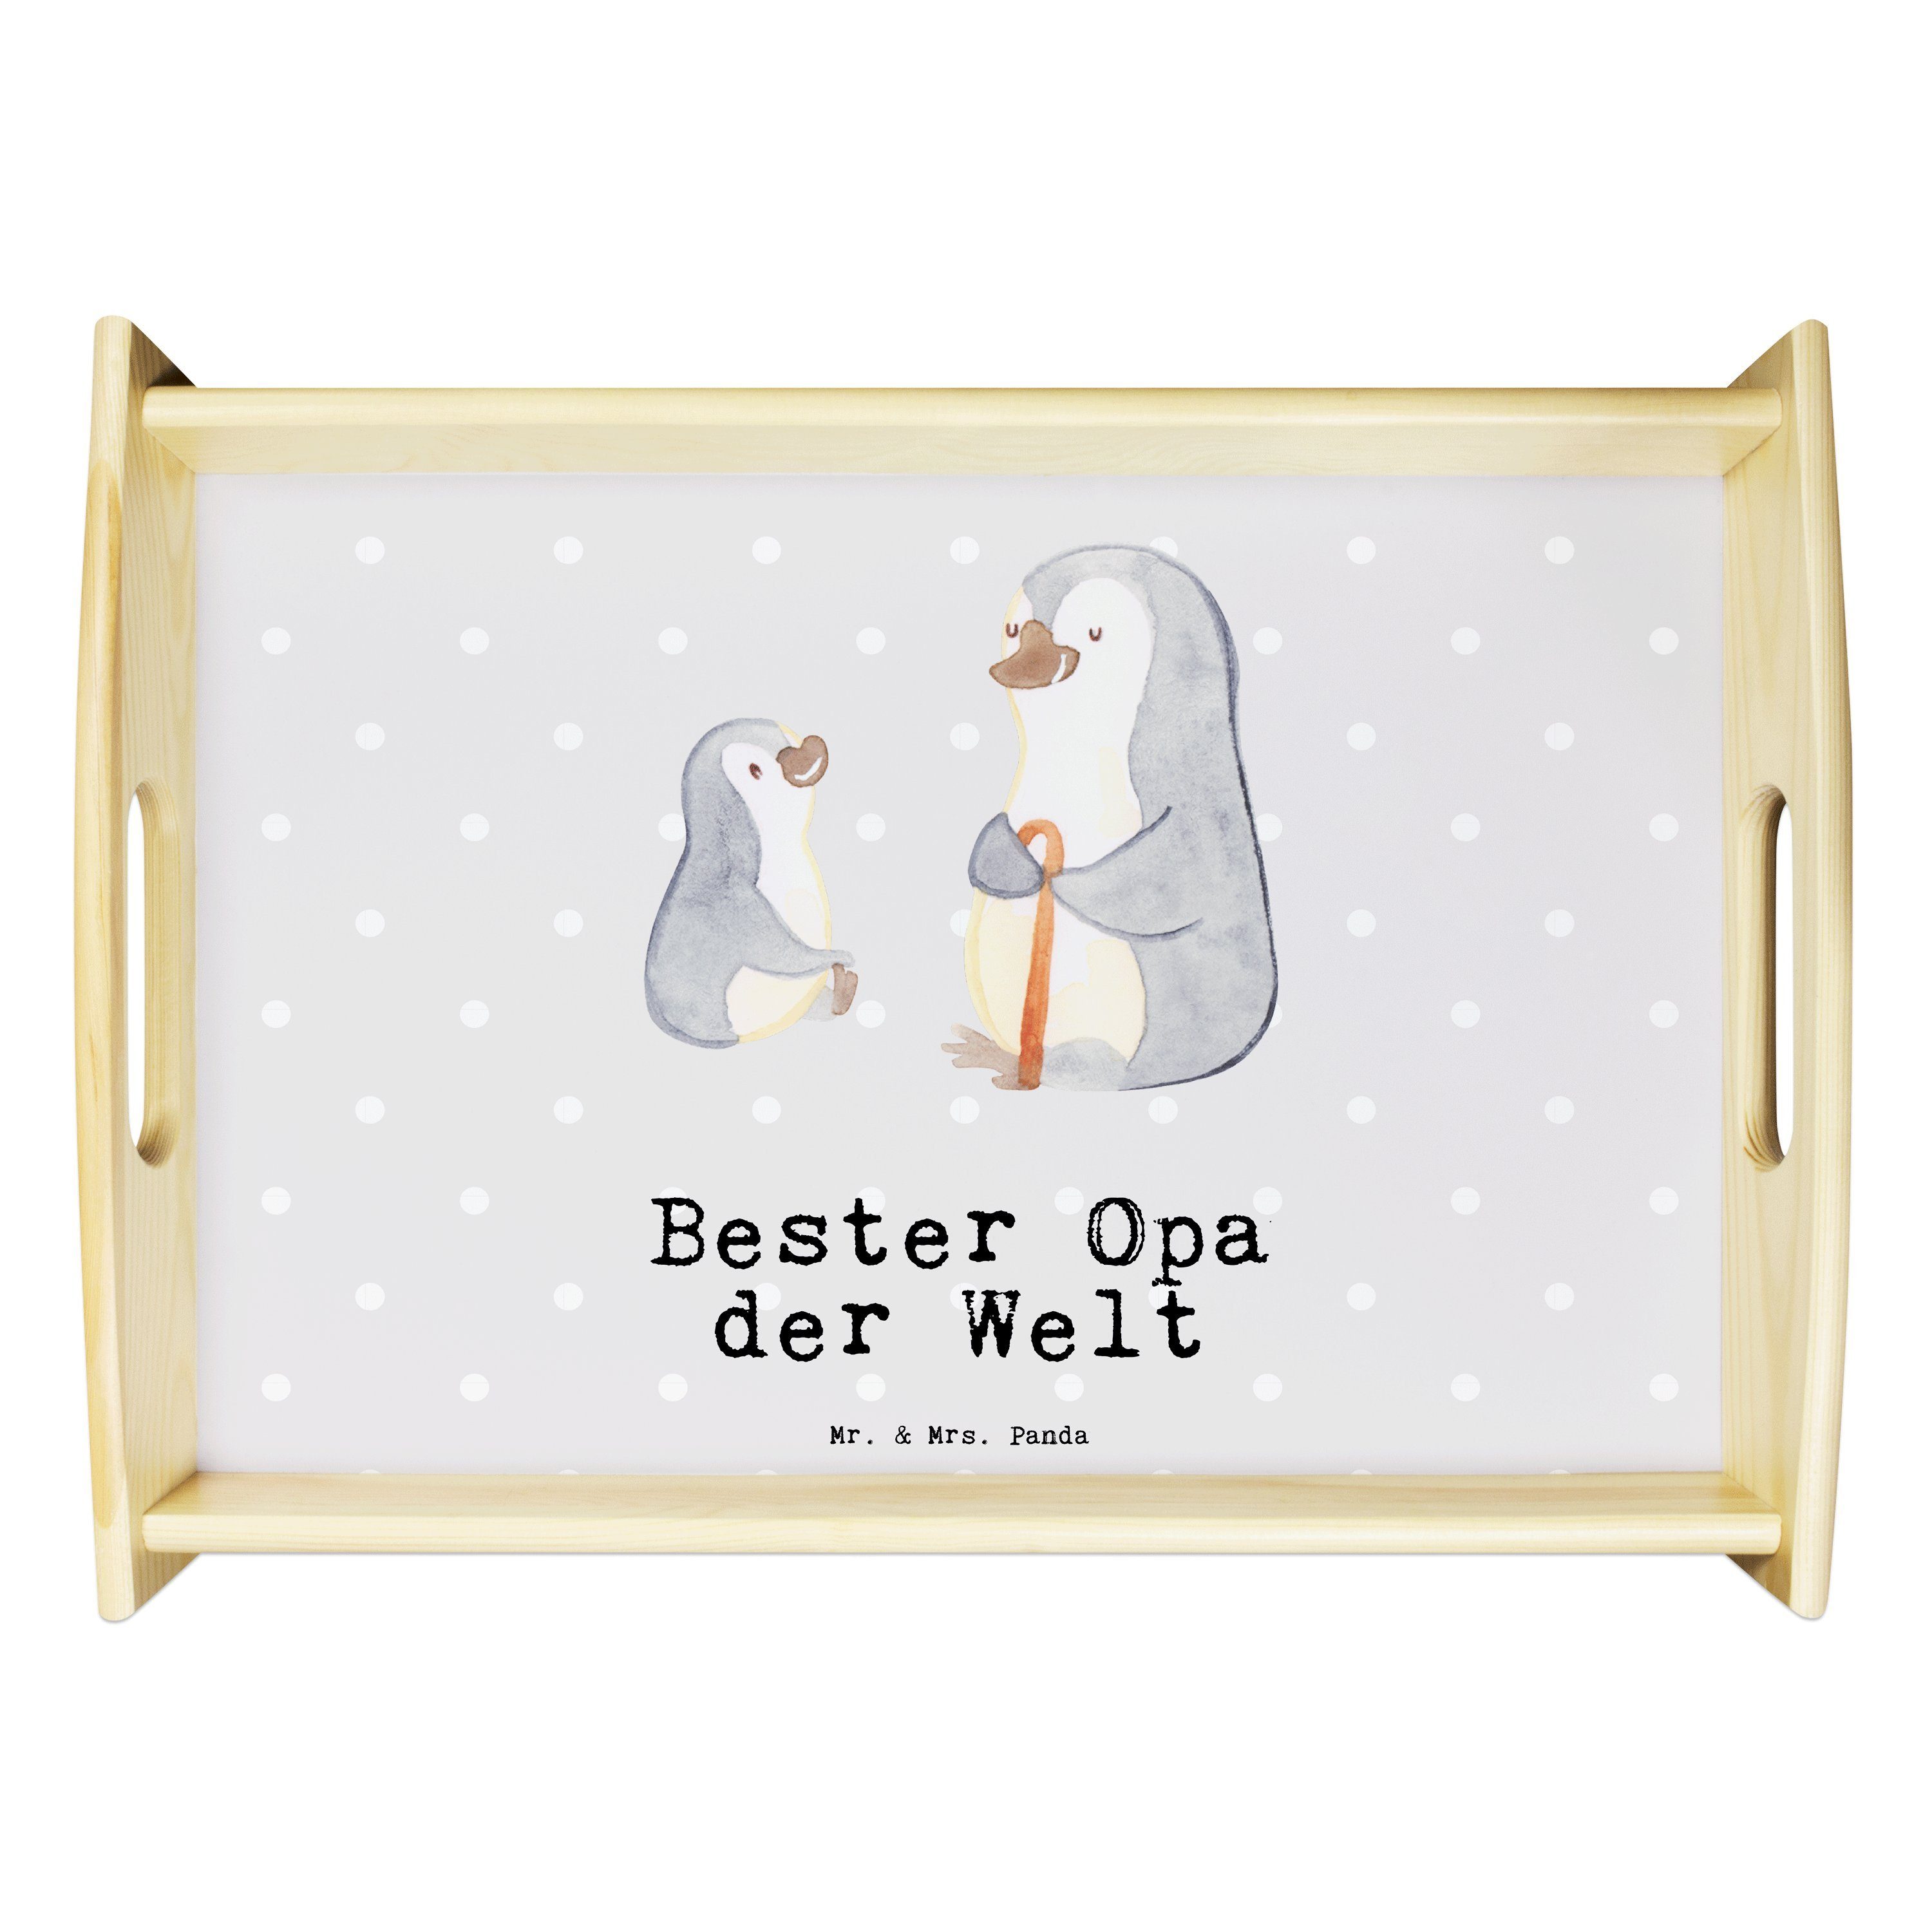 Wir bieten supergünstige Preise Mr. & Mrs. Panda Tablett (1-tlg) Welt - Echtholz Grau Opa lasiert, Pastell Bester der - Pinguin Geschenk, Geburtstagsges